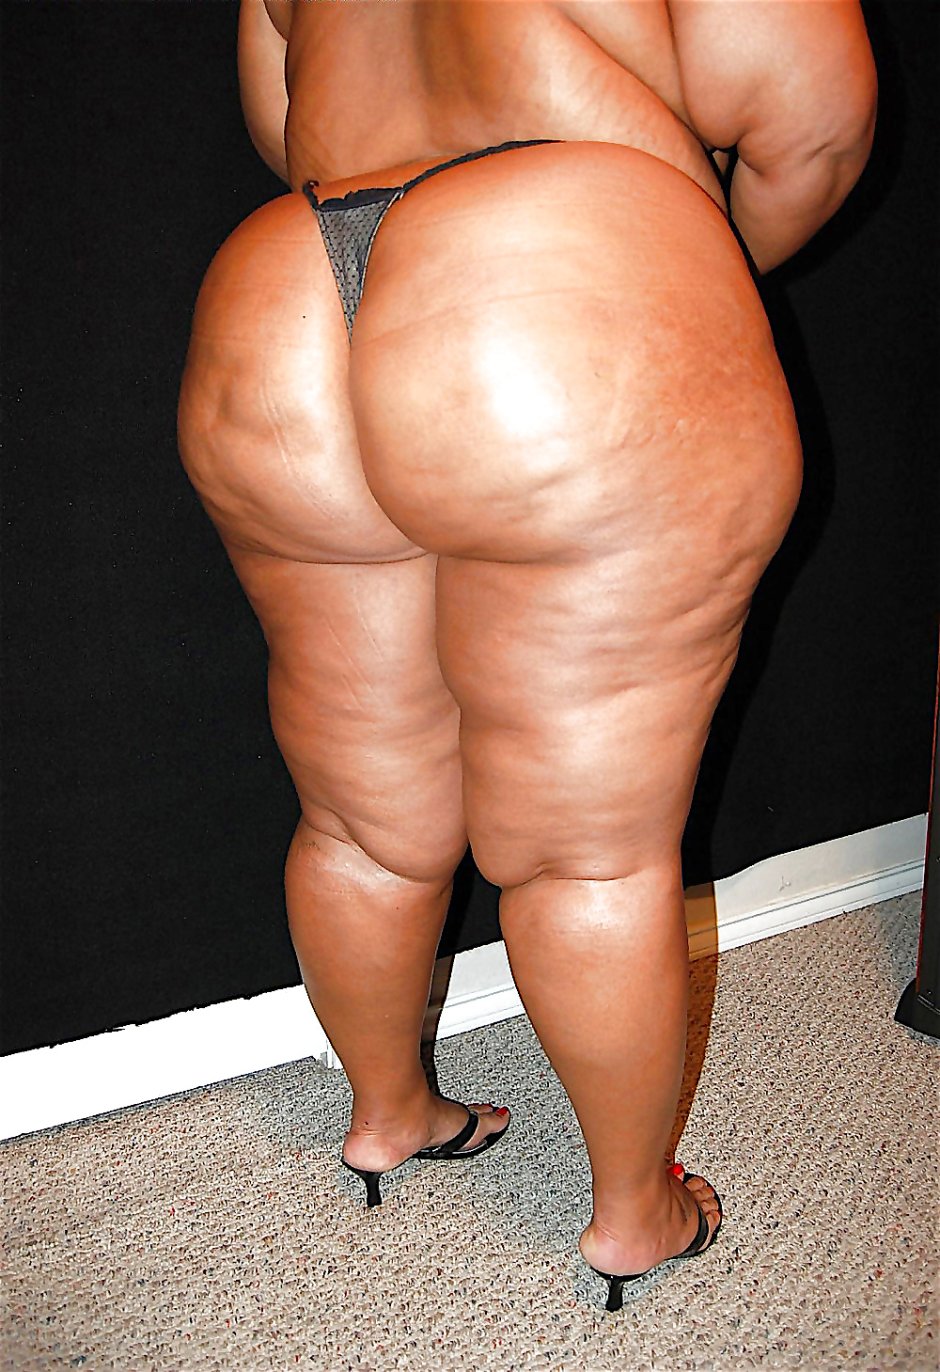 фотки жопы толстых женщин фото 54